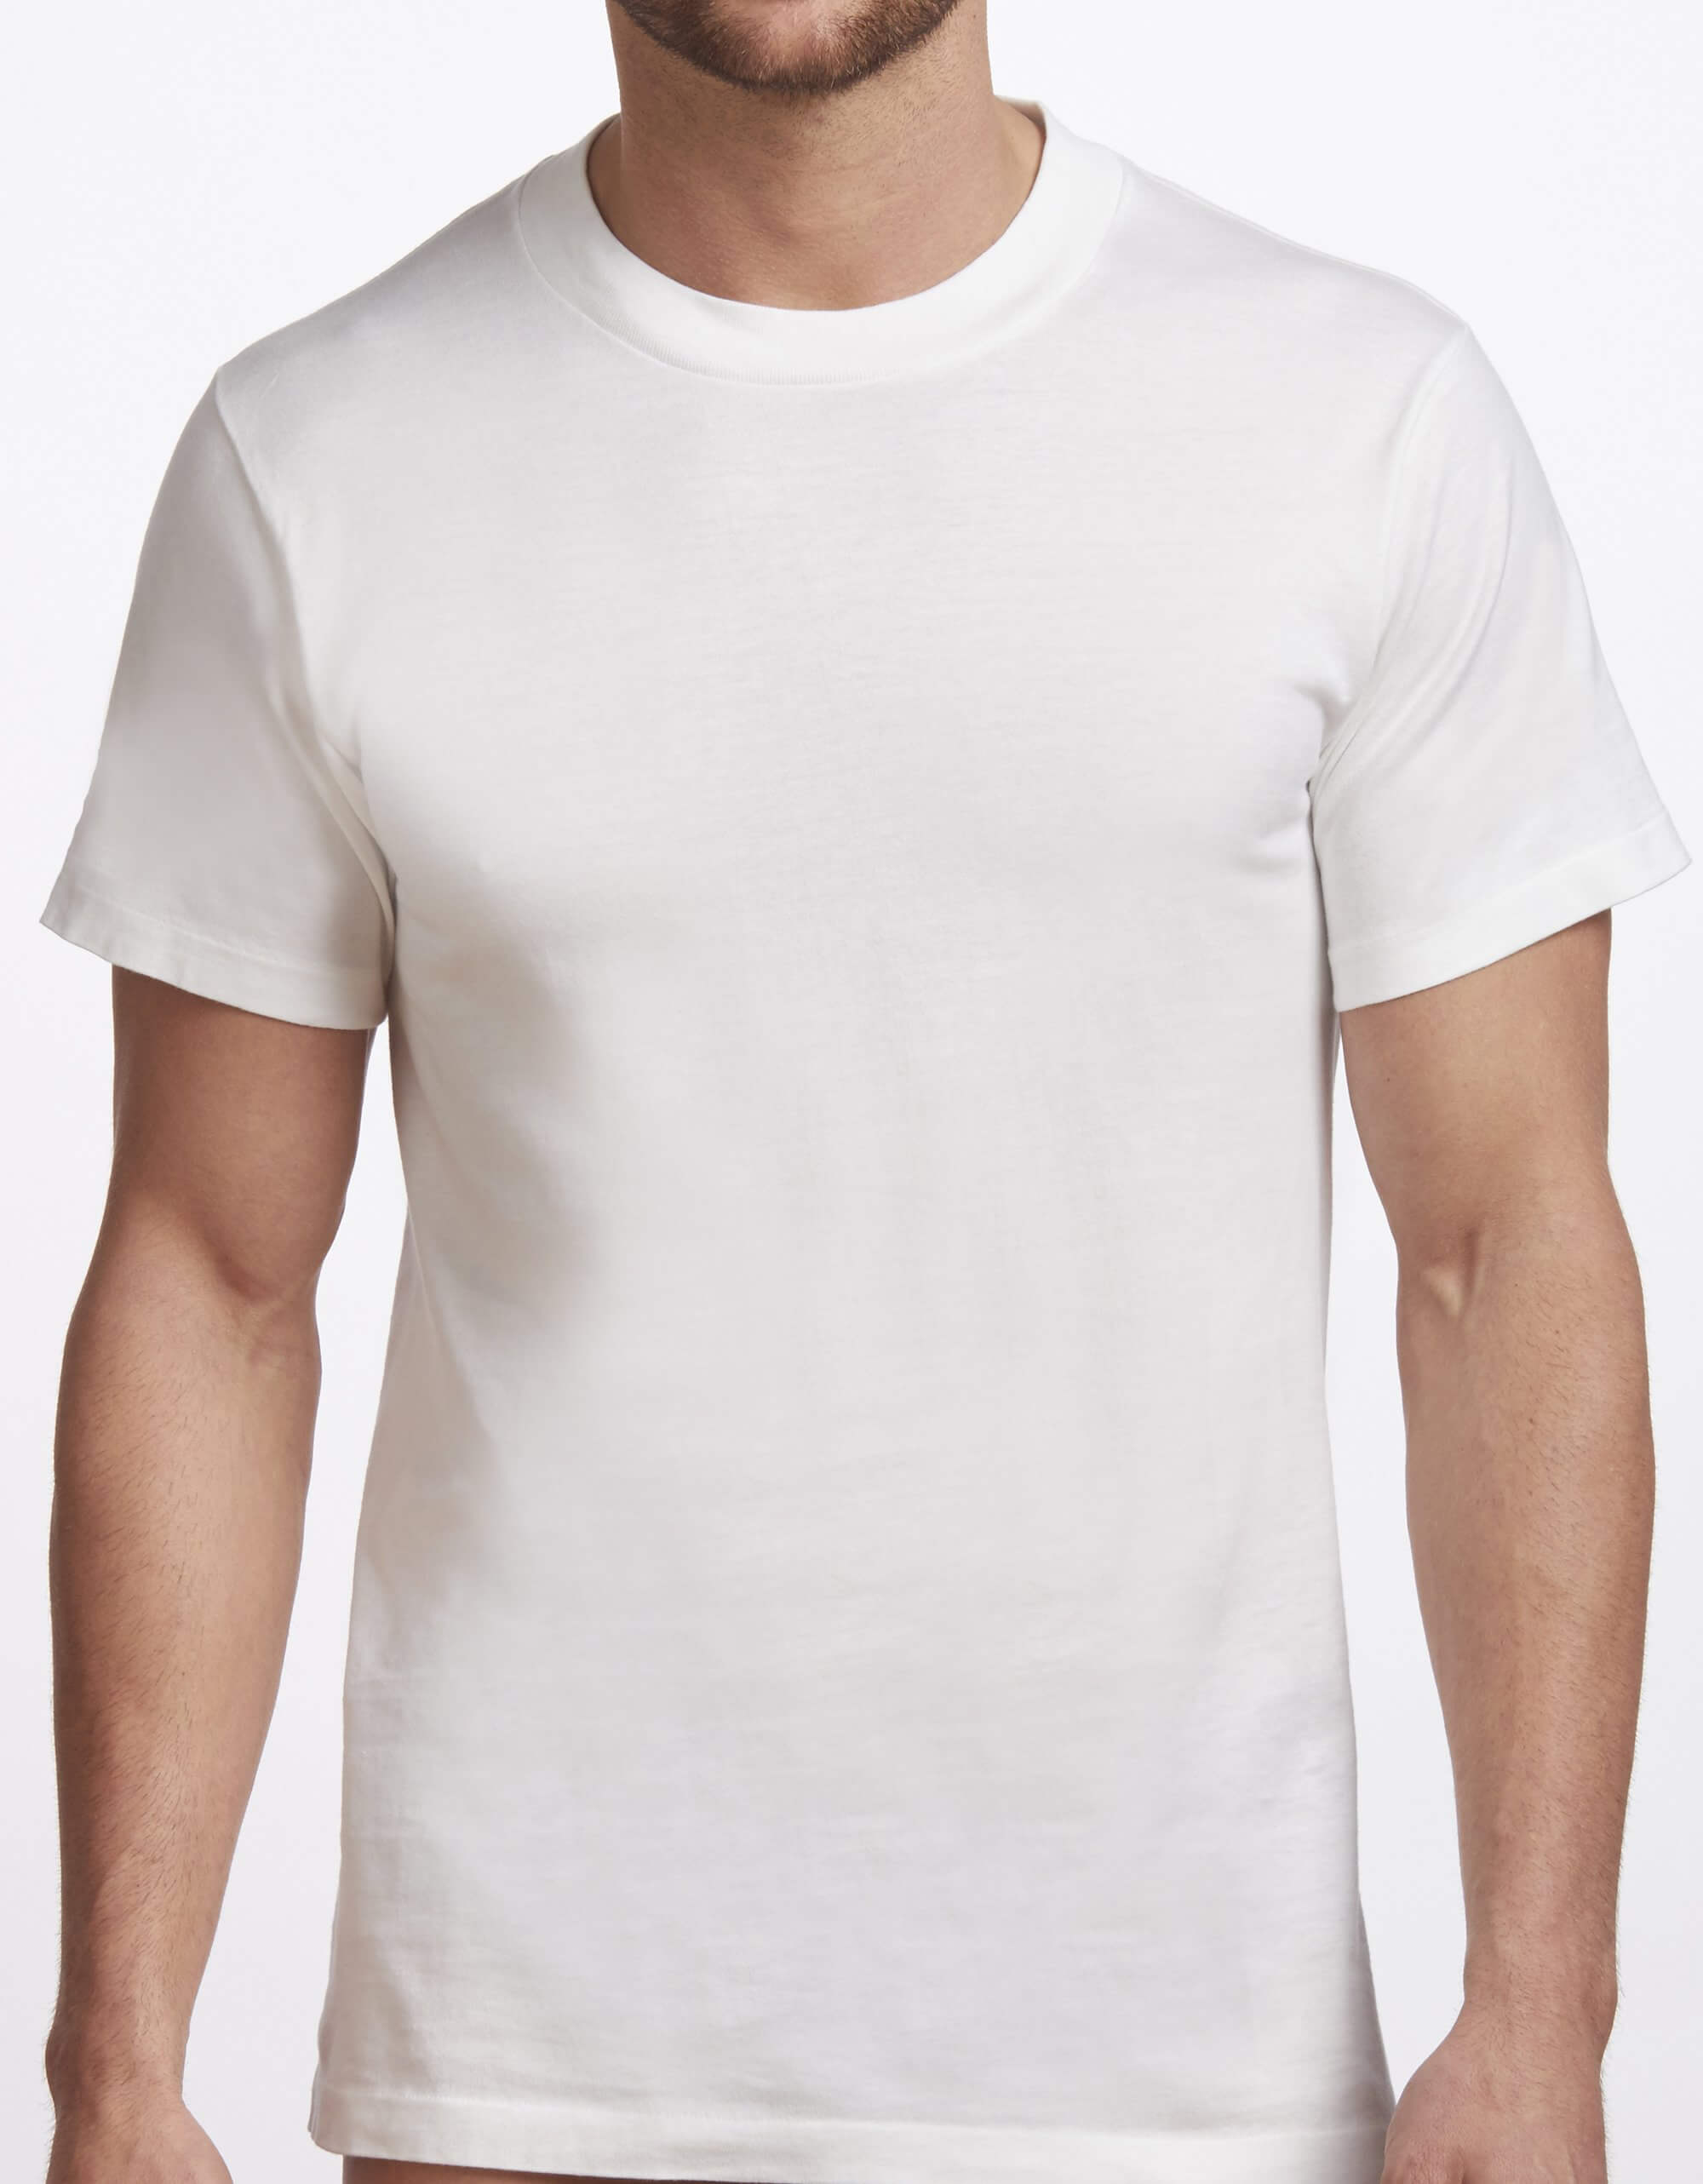 Men's Crew Neck T-Shirt Premium Collection (Cotton 2 Pack)